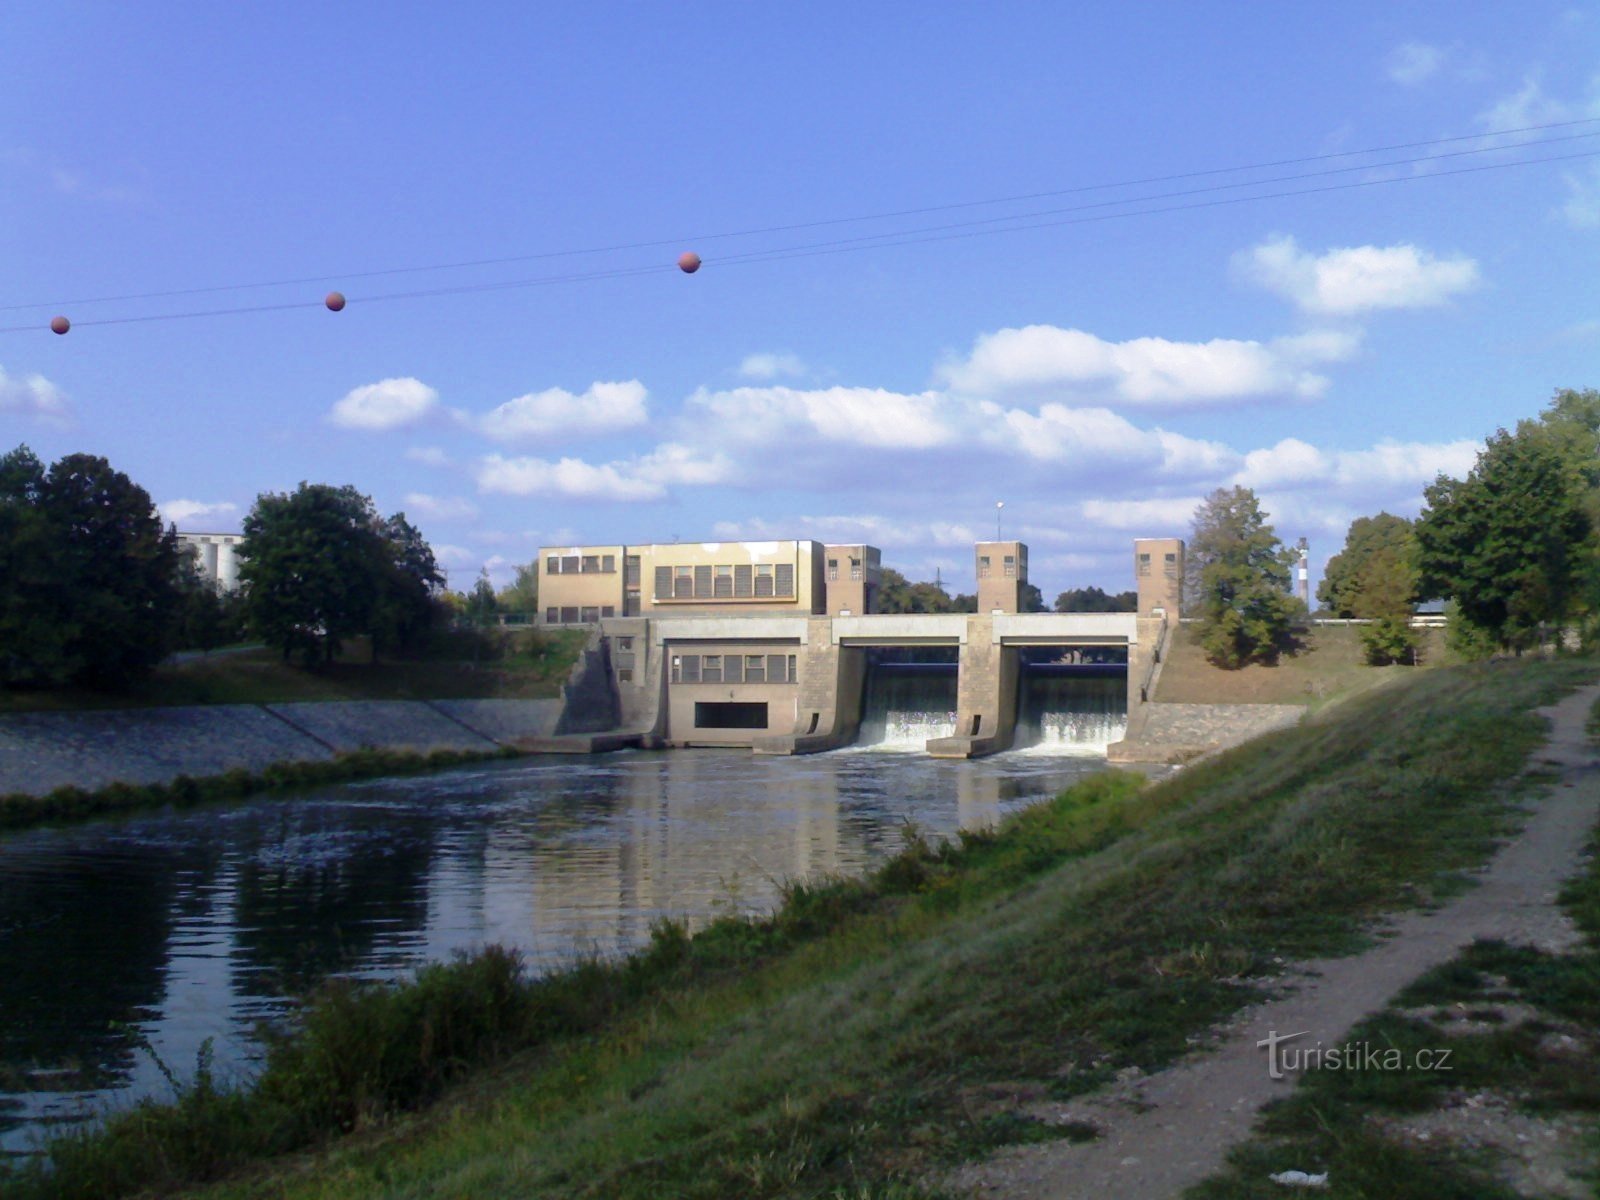 Đập Předměřice - nhà máy thủy điện